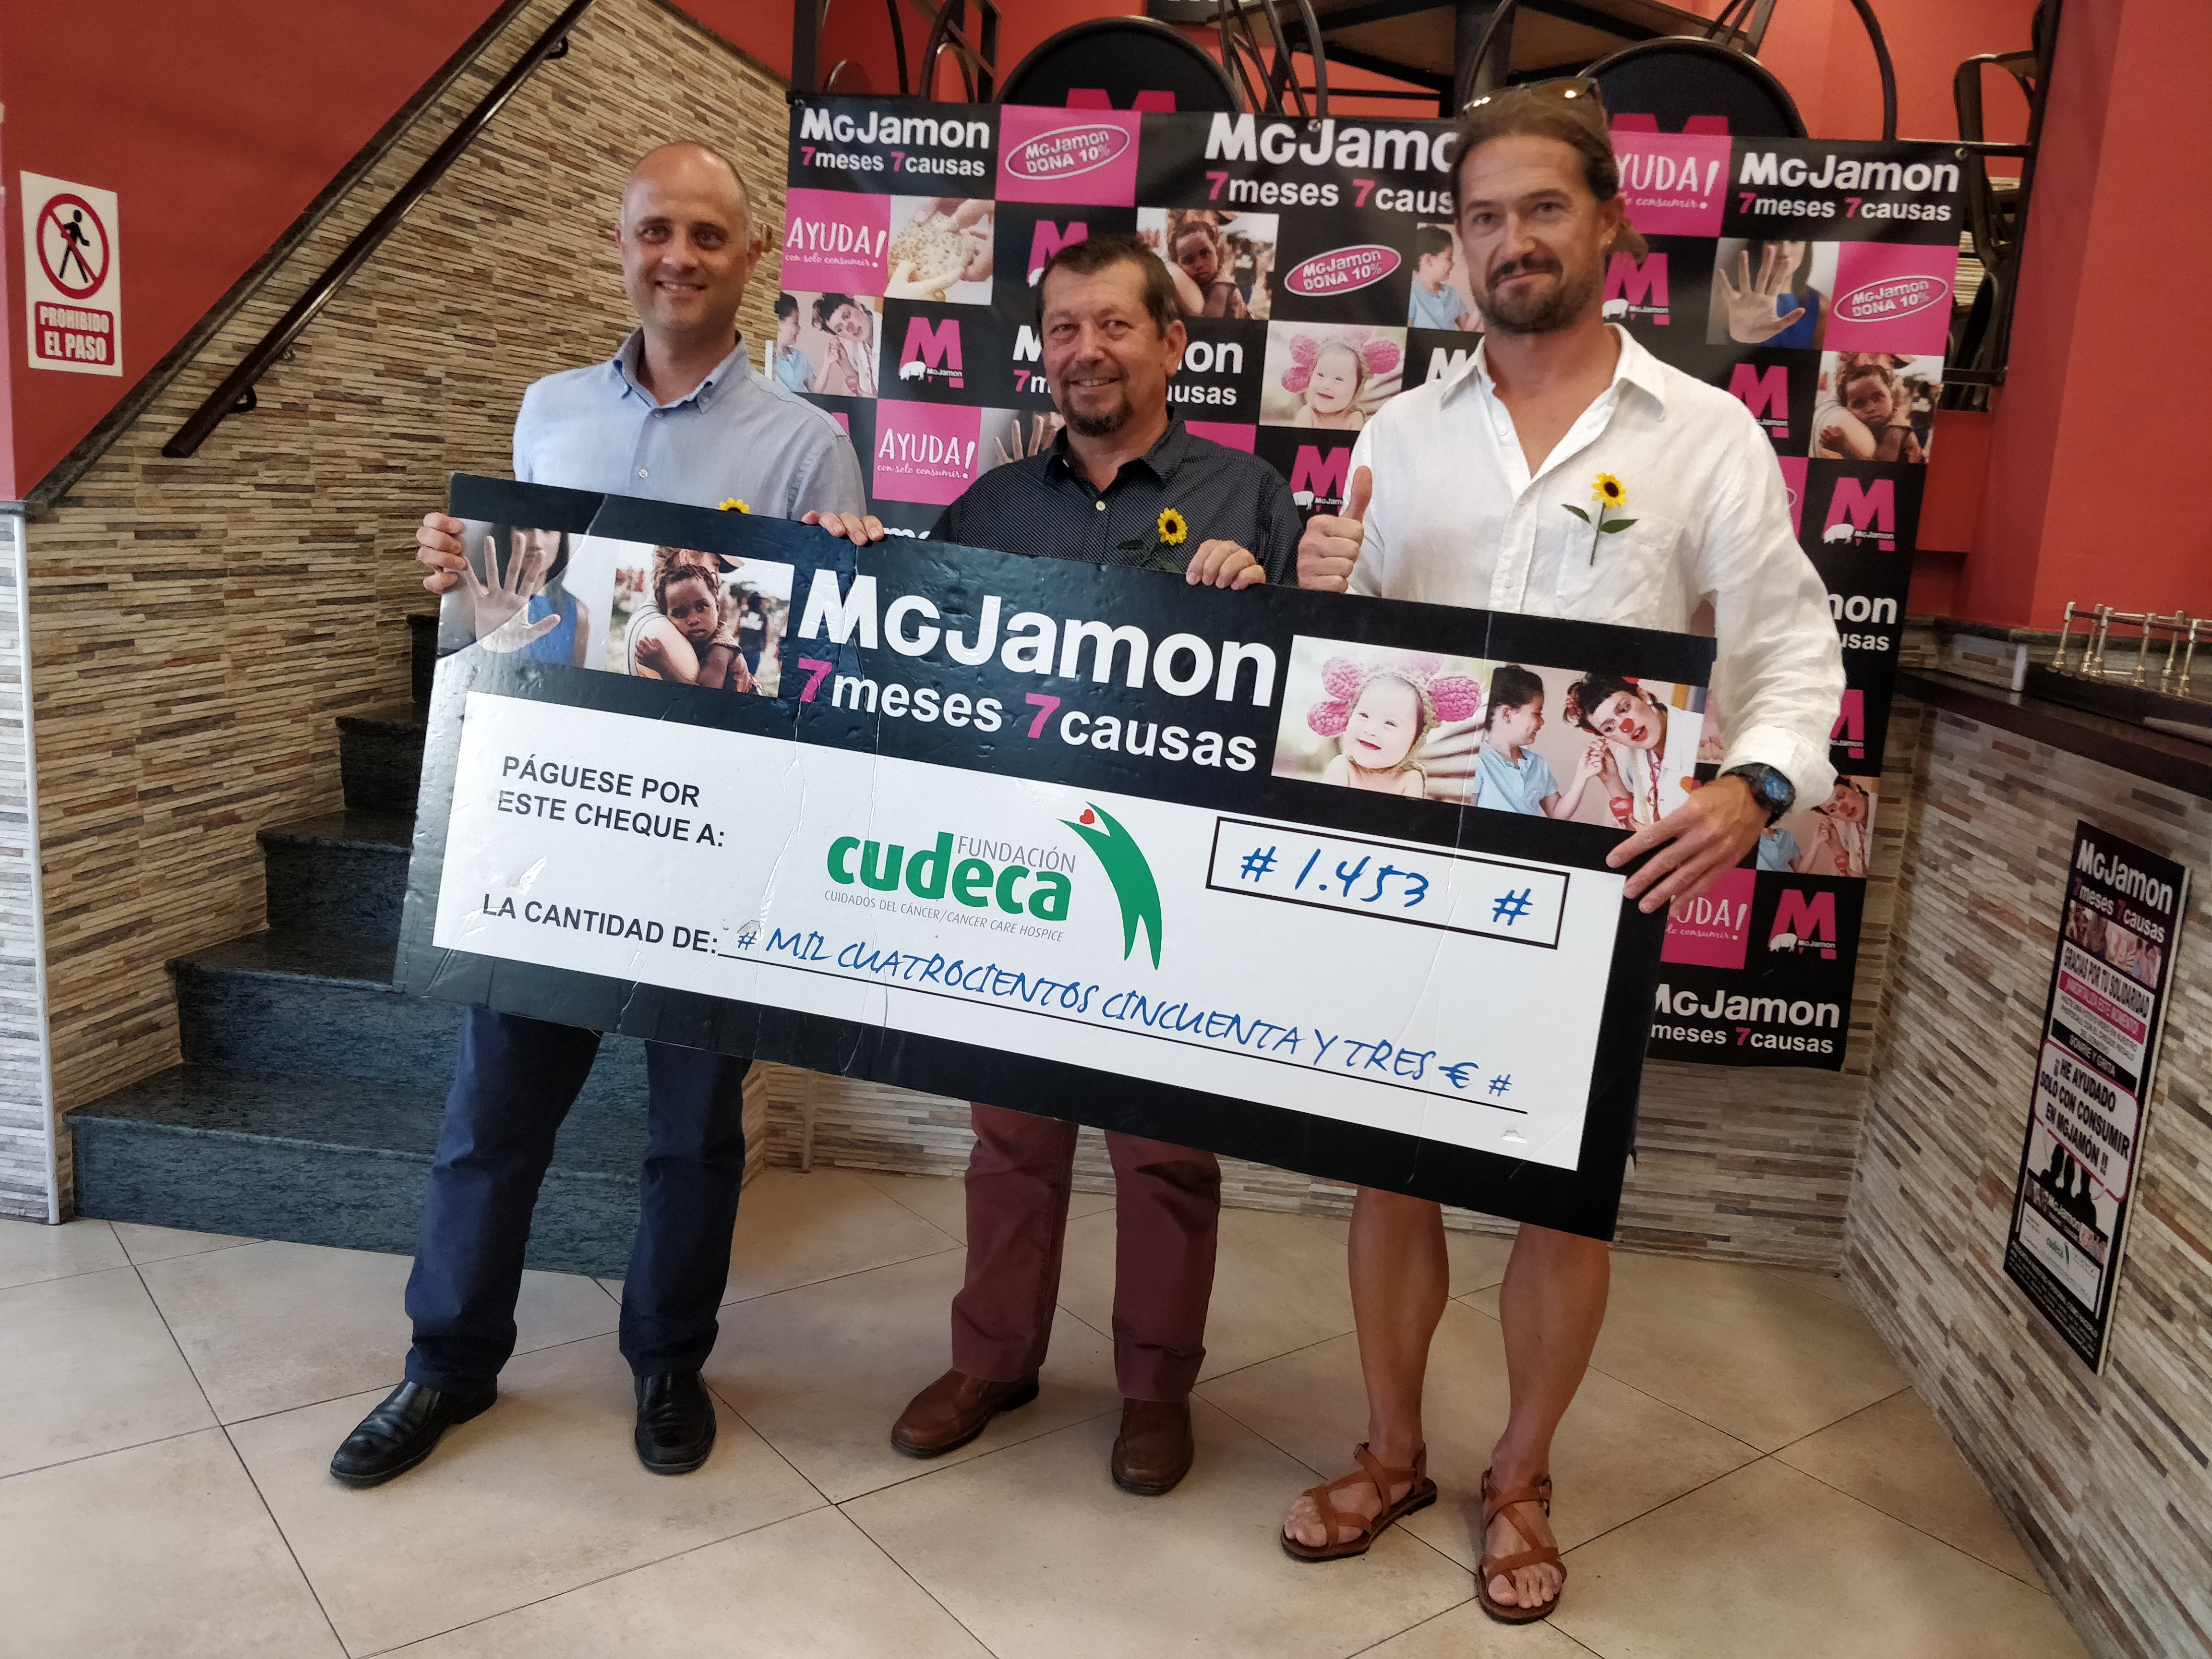 MG Jamón en apoyo a CUDECA junto al Ayuntamiento de Torremolinos